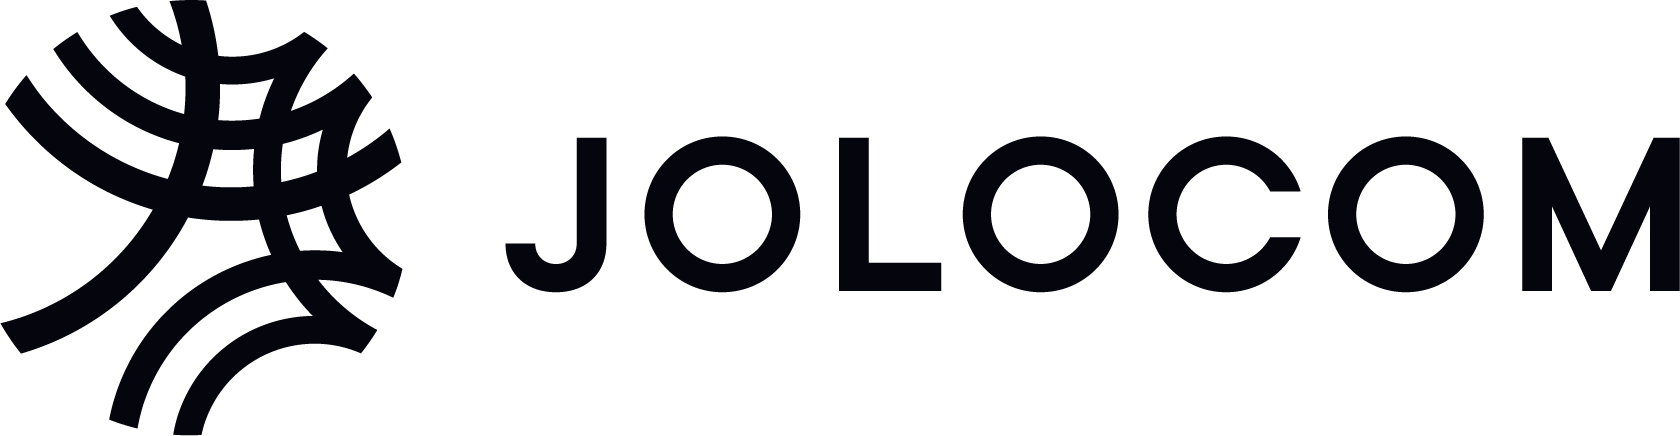 Jolocom logo